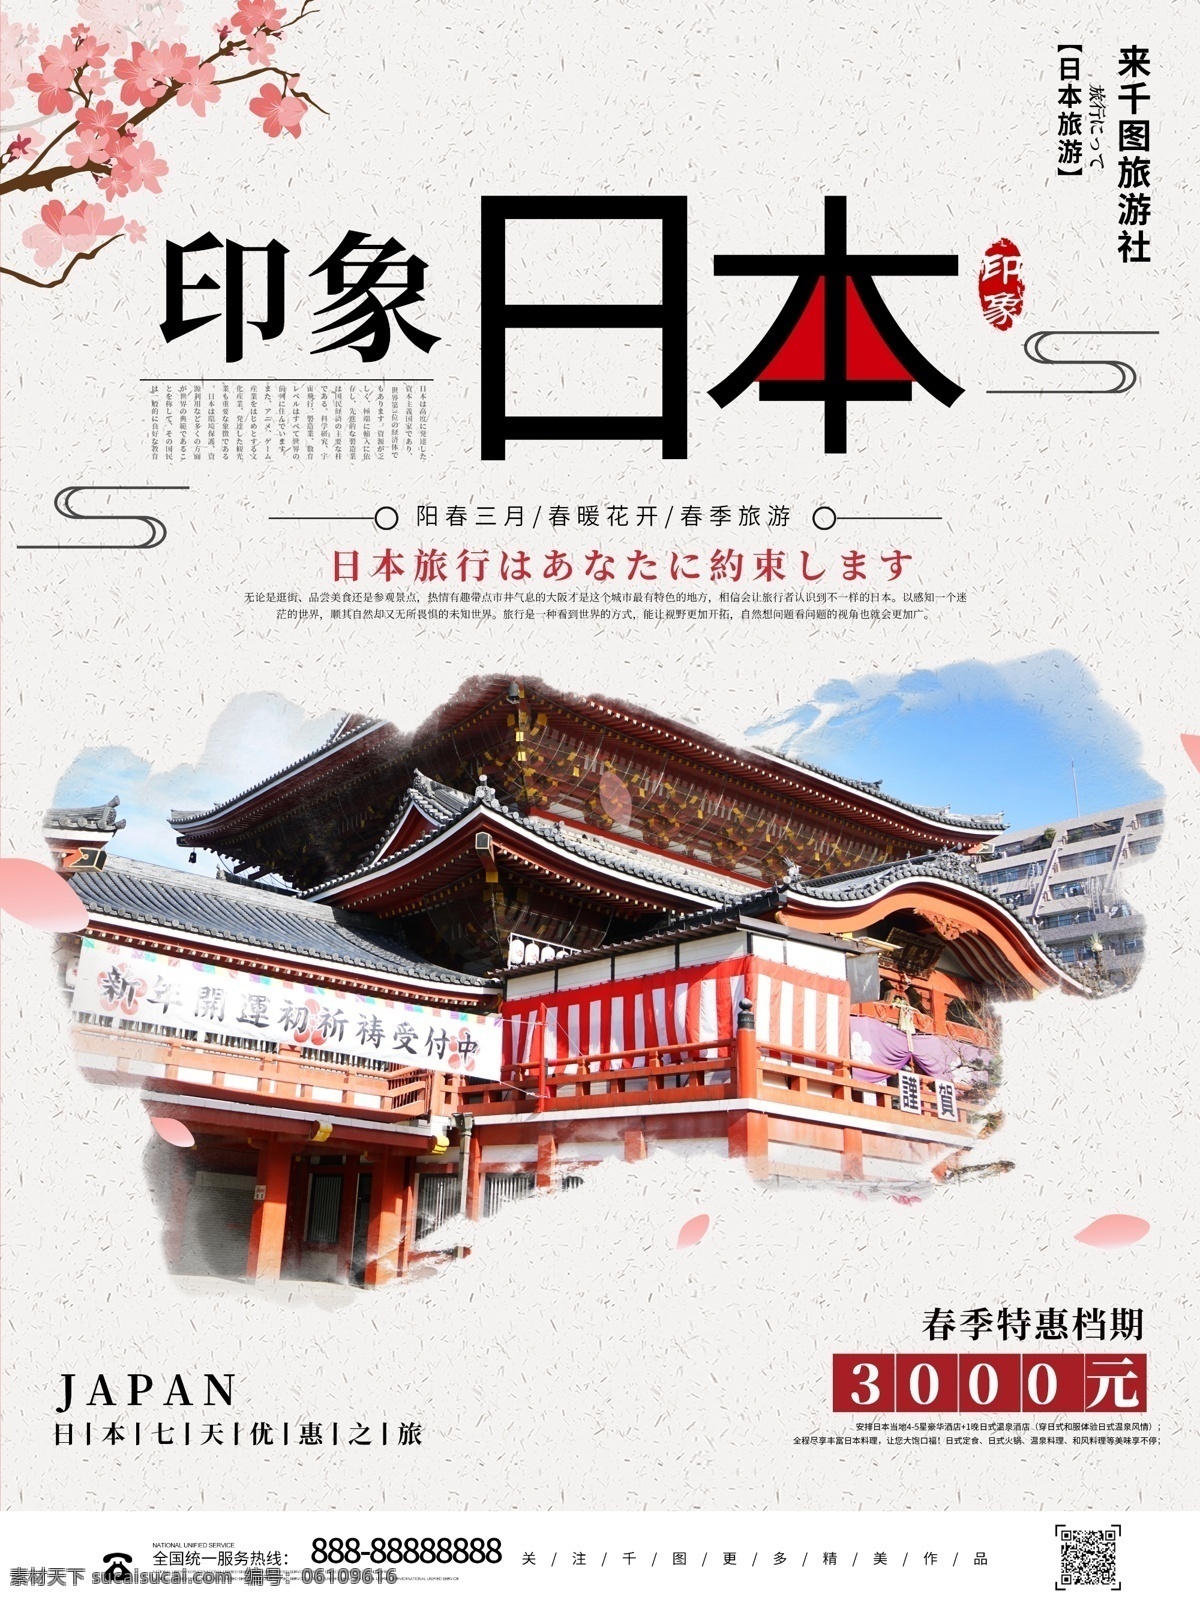 简约 创意 印象 日本旅游 宣传海报 旅游海报 日本东京 日本风景 日本广告 日本建筑 日本旅游海报 日本旅游景点 日本旅游文化 日本名胜 印象日本